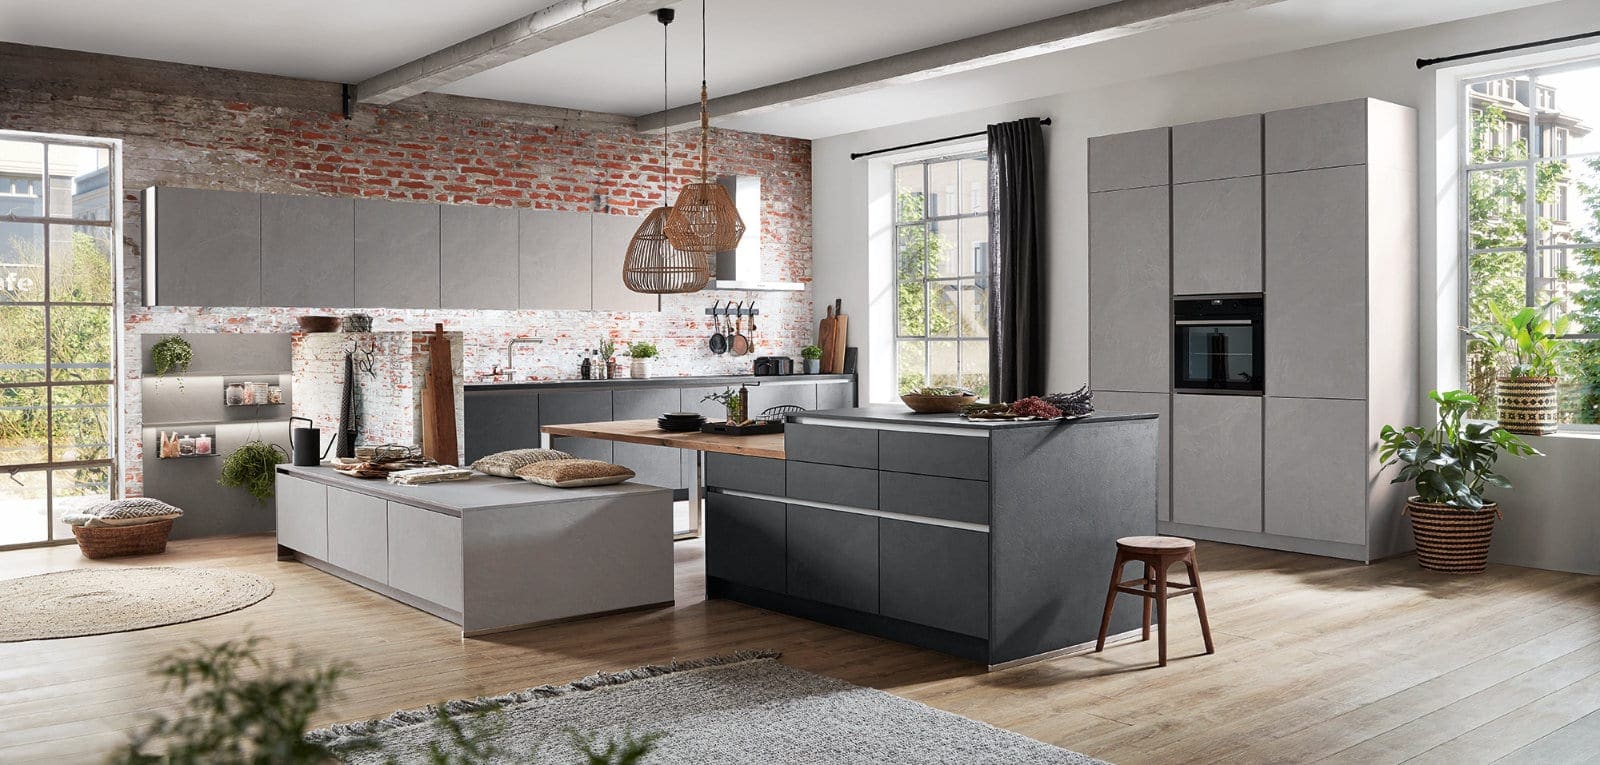 Nobilia Modern Concrete Handleless Open Plan Kitchen With Island 2021 | MHK Kitchen Experts